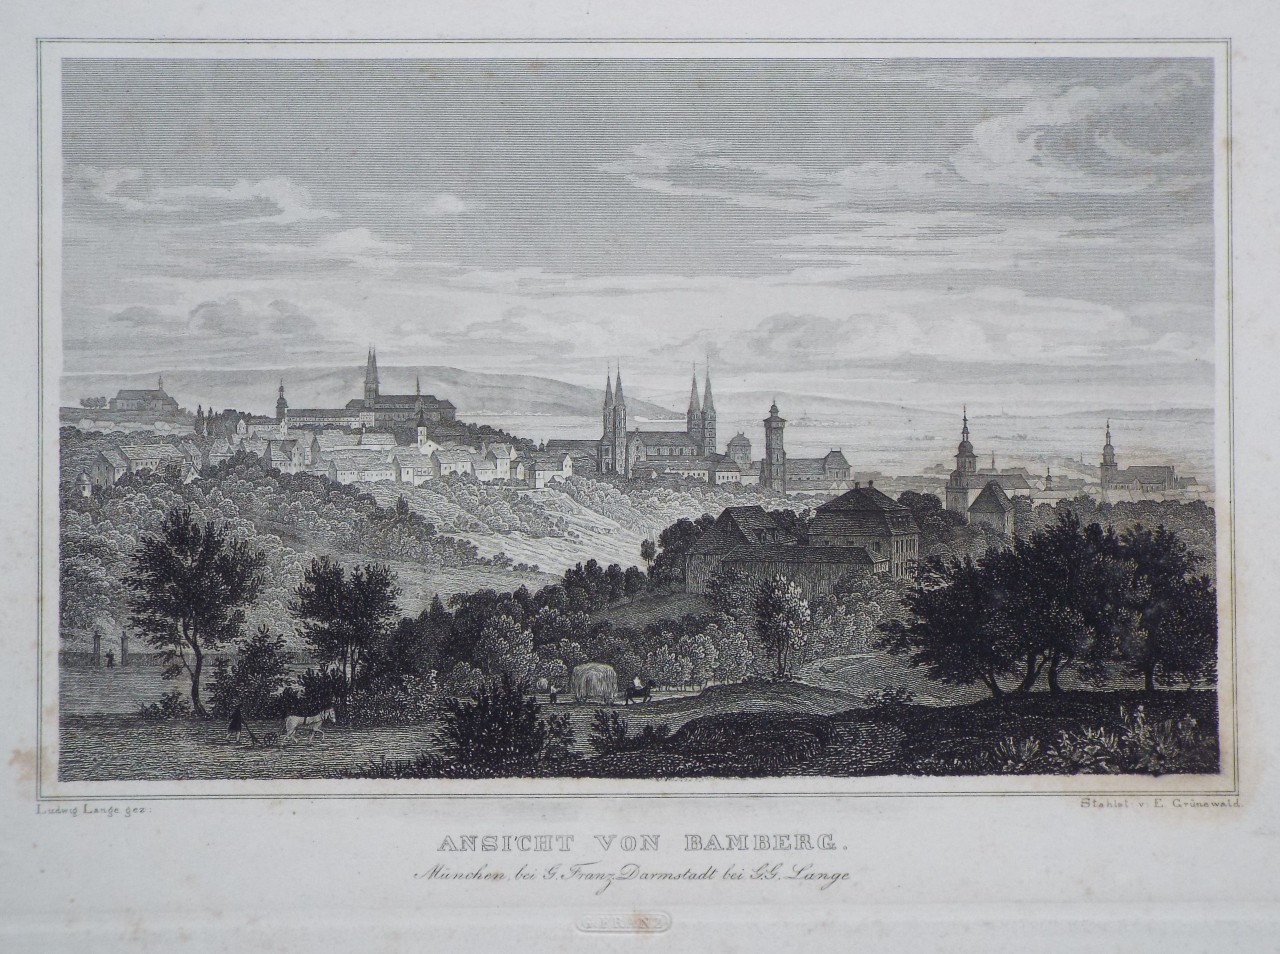 Print - Ansicht von Bamberg. Munchen, bei G. Franz. Darmstadt bei G.G. Lange - Grunewald